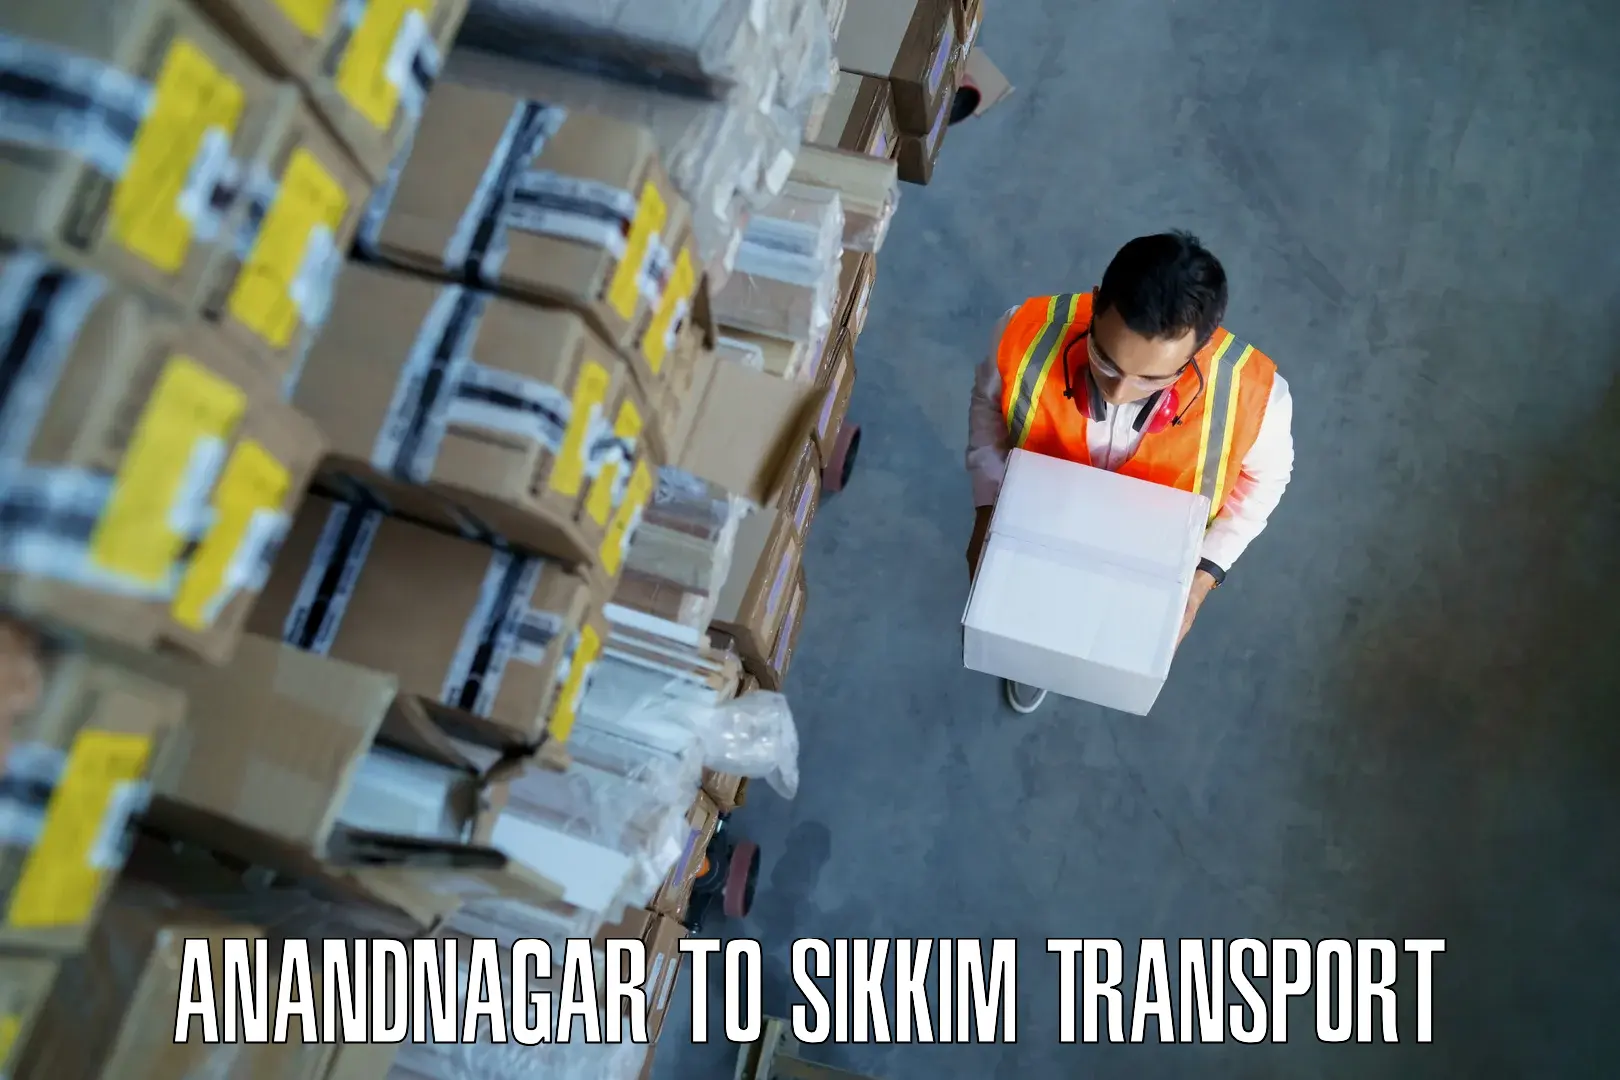 Shipping partner Anandnagar to Pelling